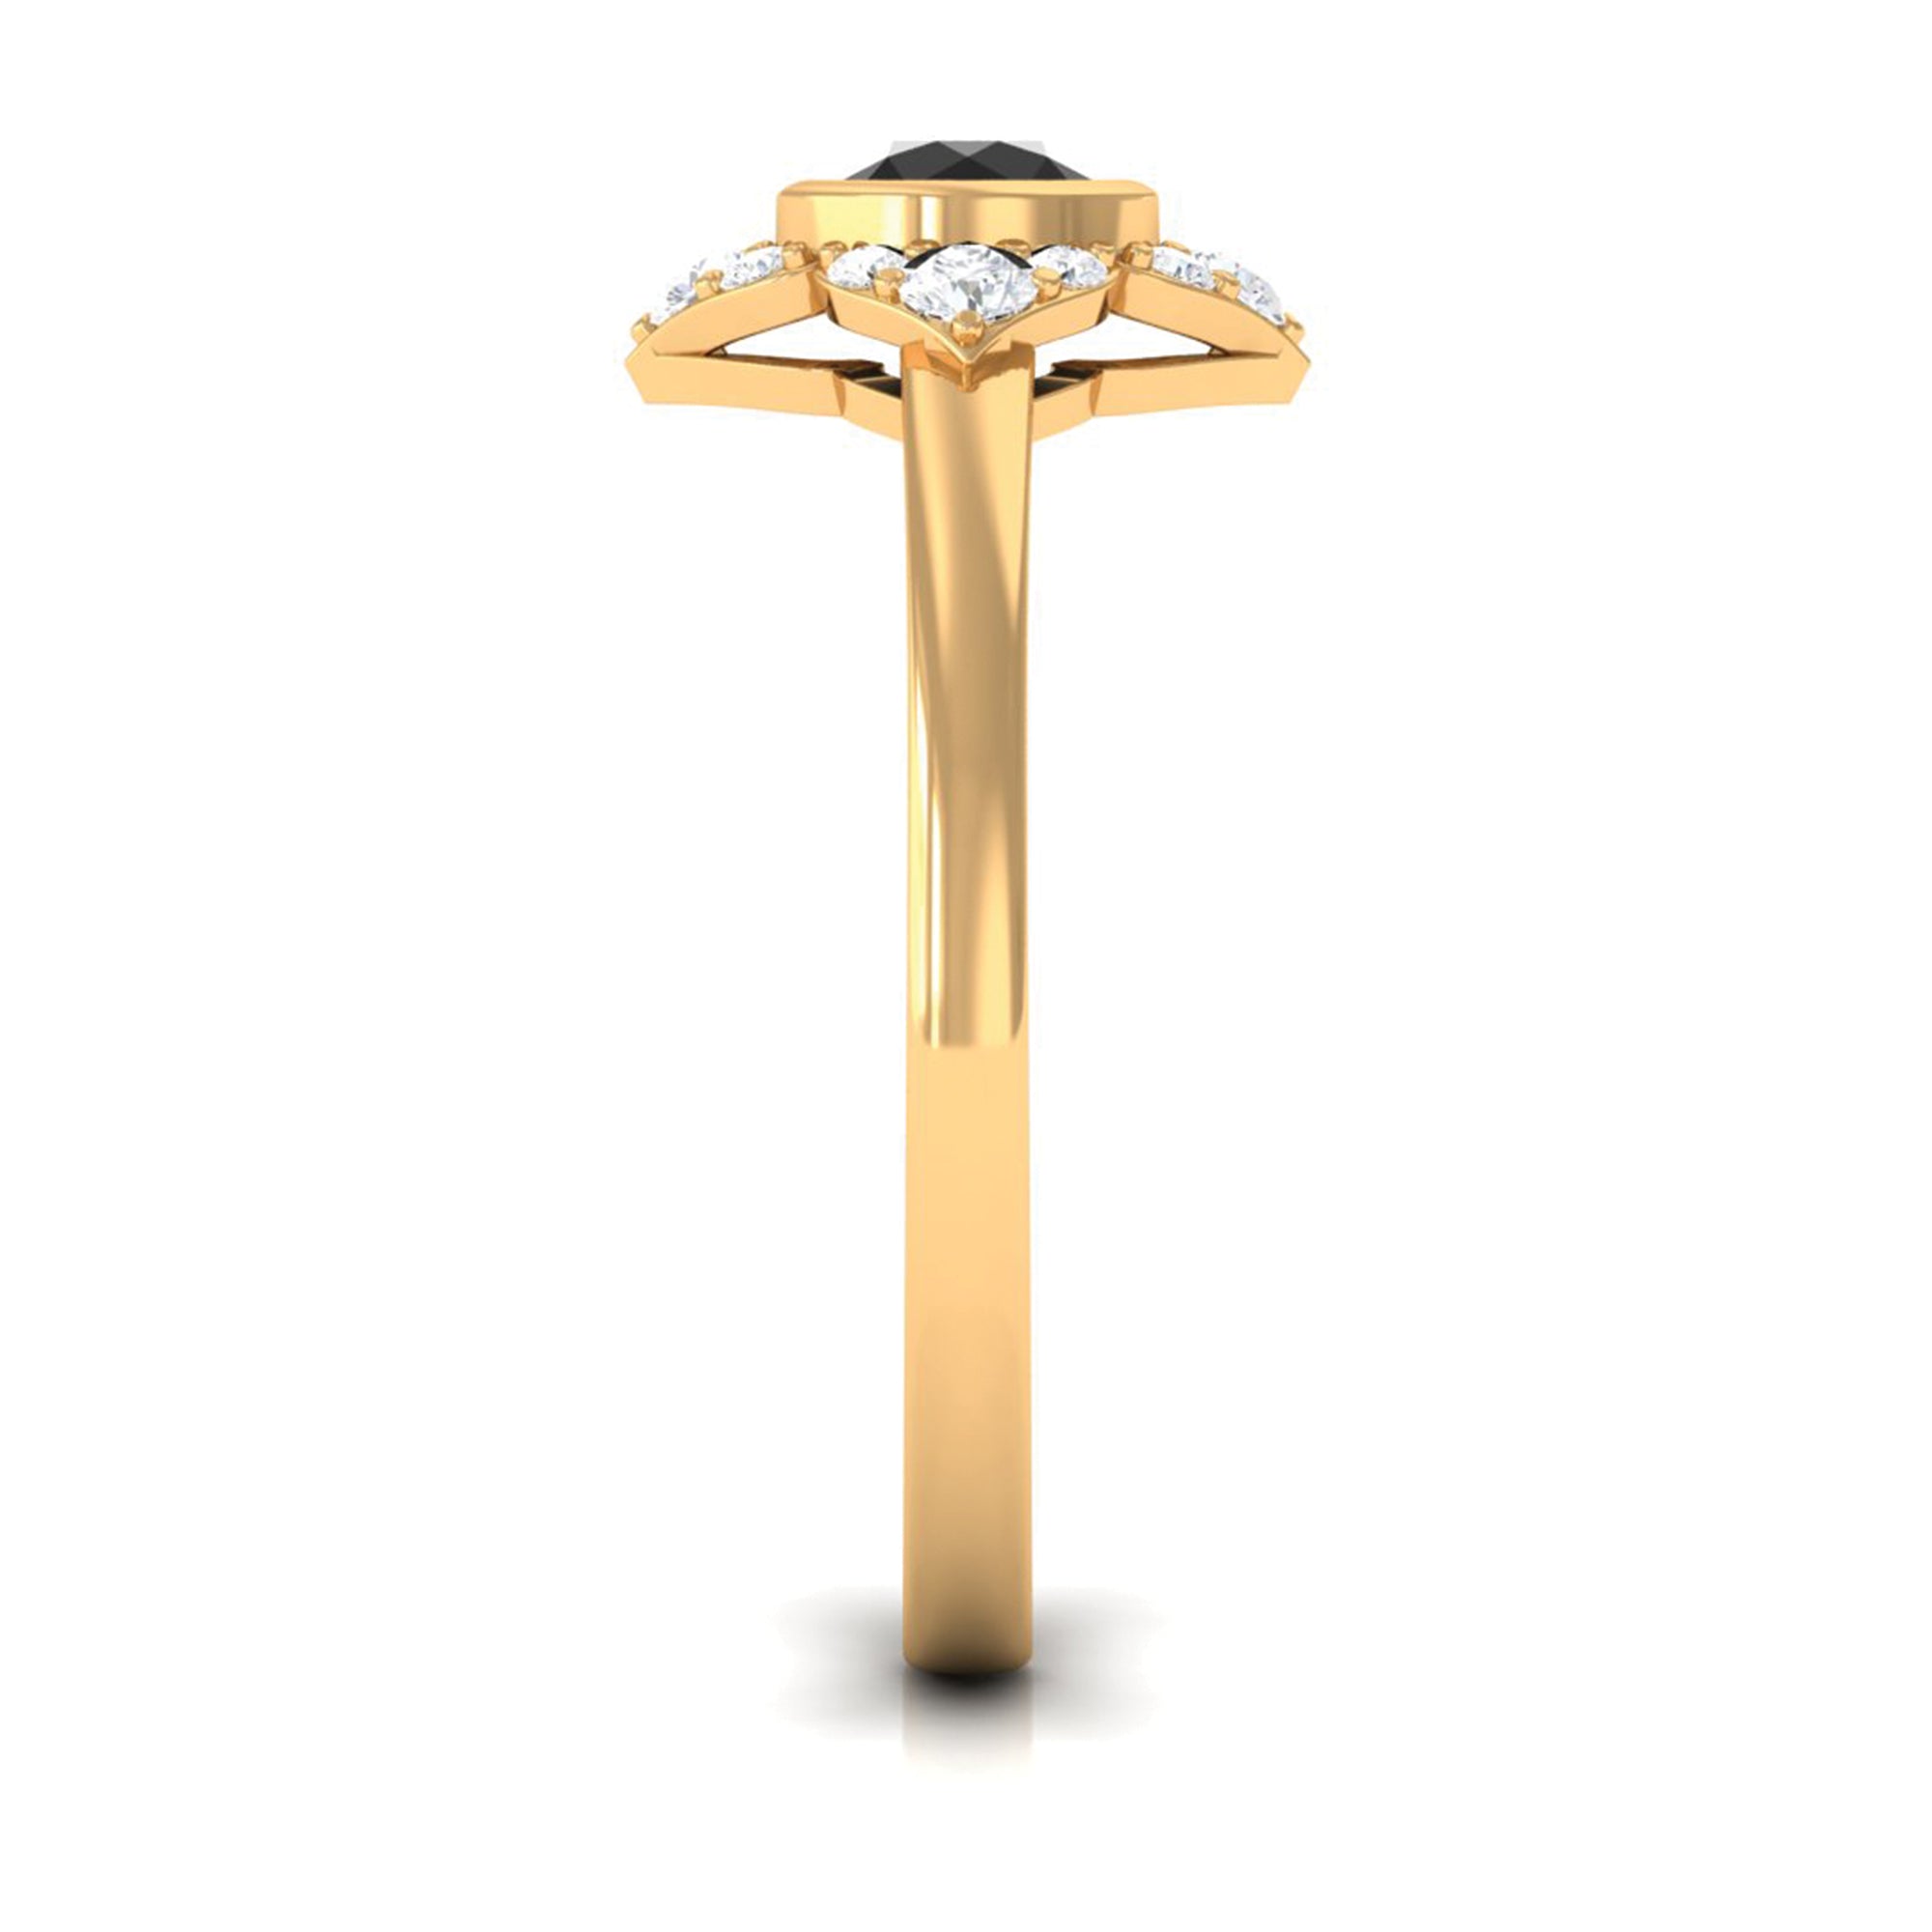 Bezel Set Black Diamond Flower Engagement Ring with Diamond Black Diamond - ( AAA ) - Quality - Rosec Jewels